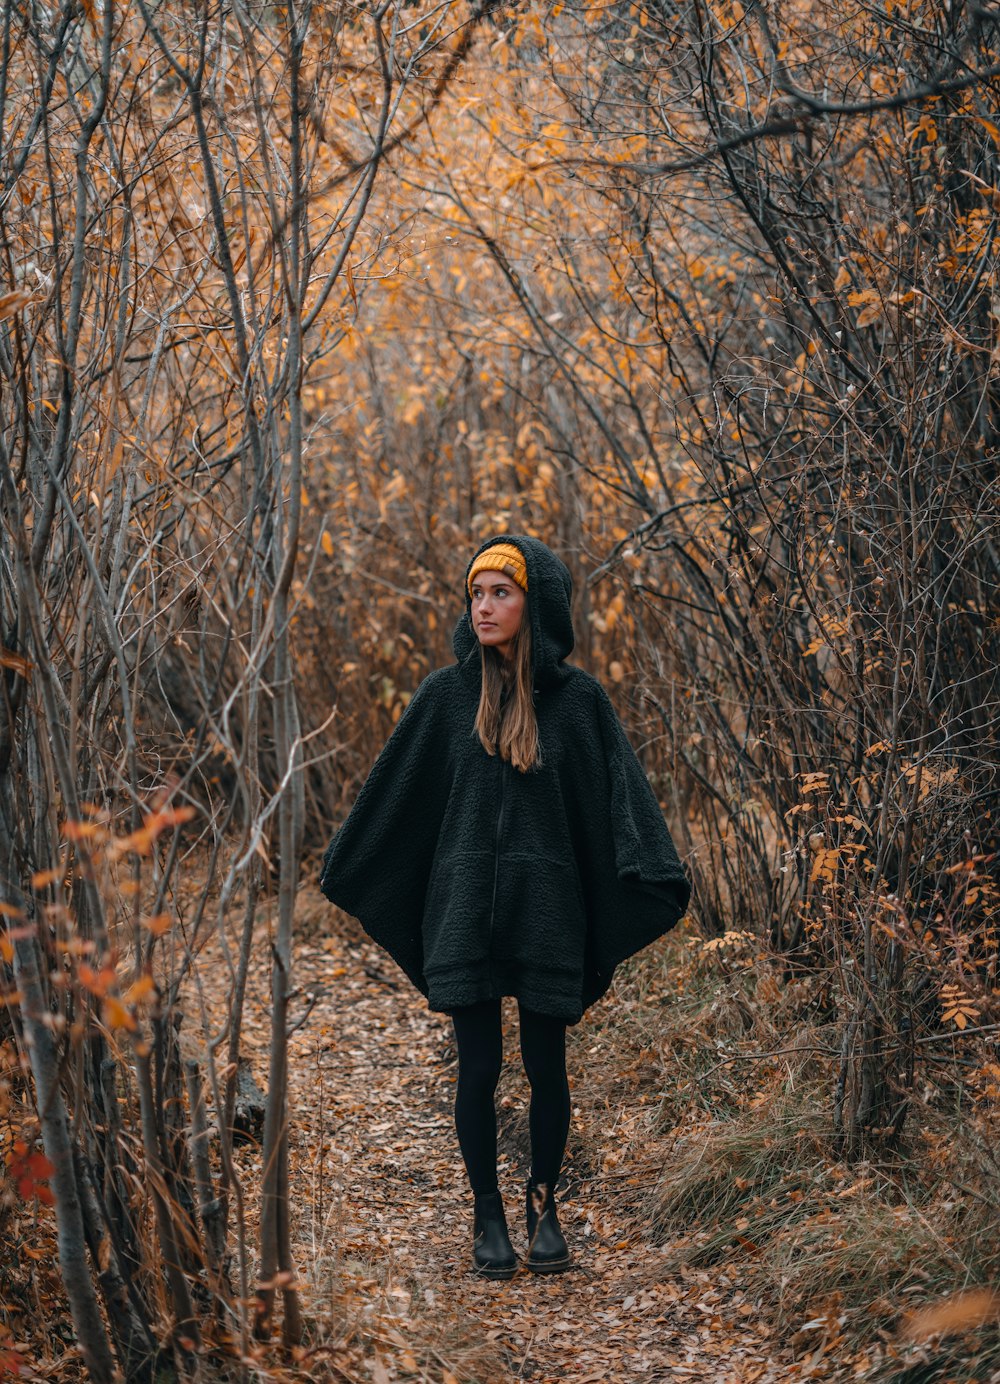 femme en manteau noir debout sur le champ d’herbe brune pendant la journée